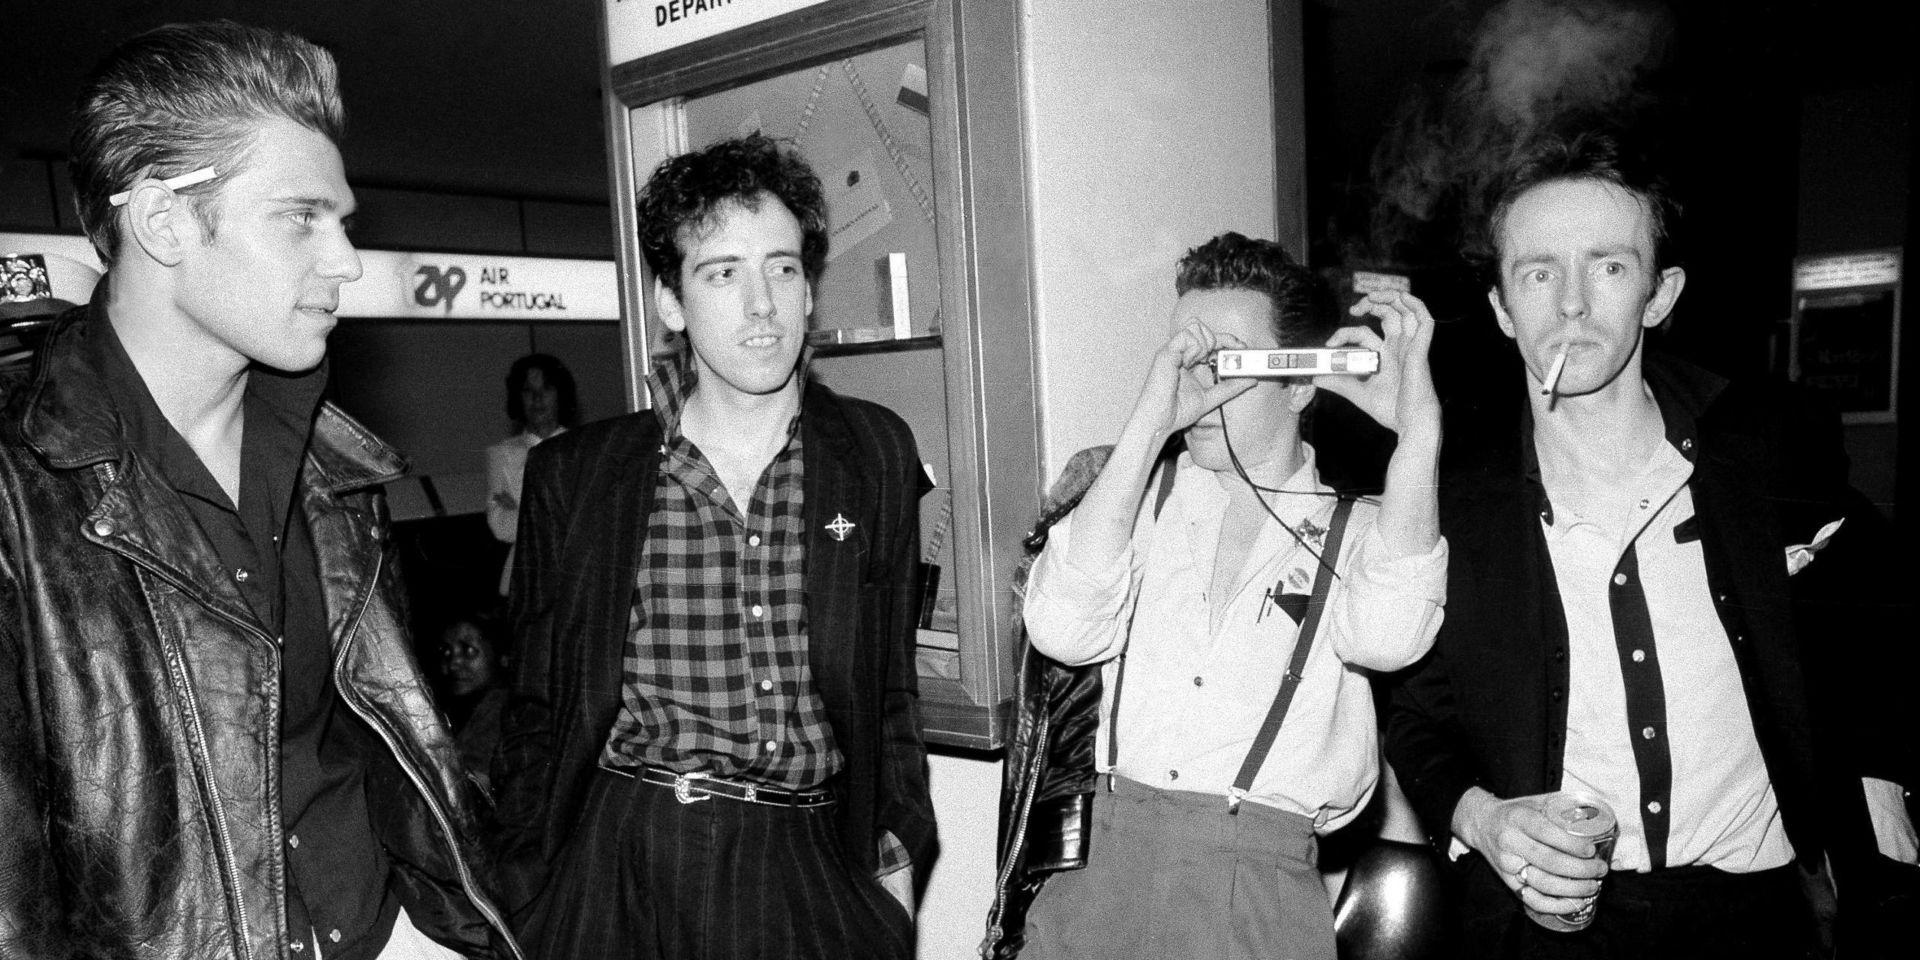 Medlemmarna ur the Clash år 1983, från vänster Paul Simonon, Mick Jones, Joe Strummer och Terry Chimes.